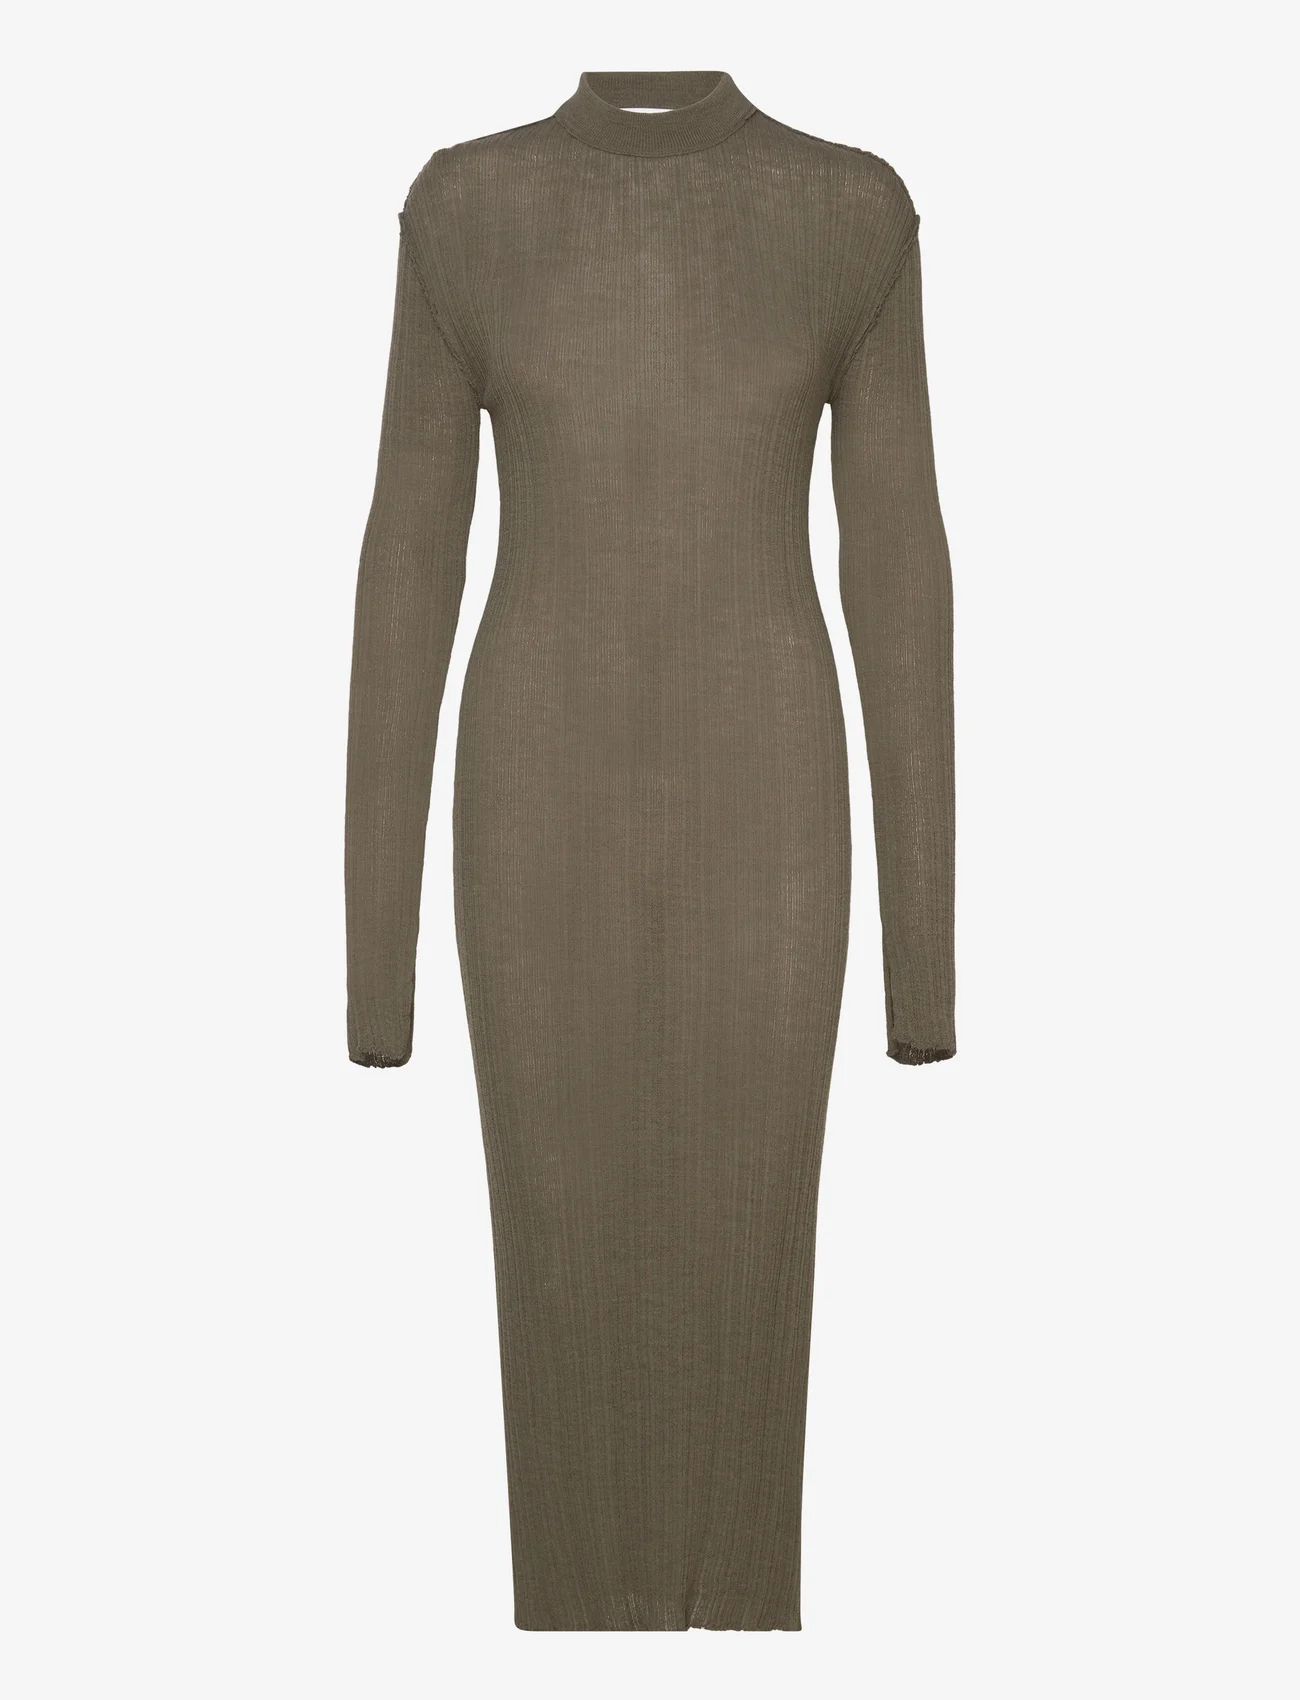 Hope - Ribbed Knitted Dress - etuikleider - dark khaki - 0